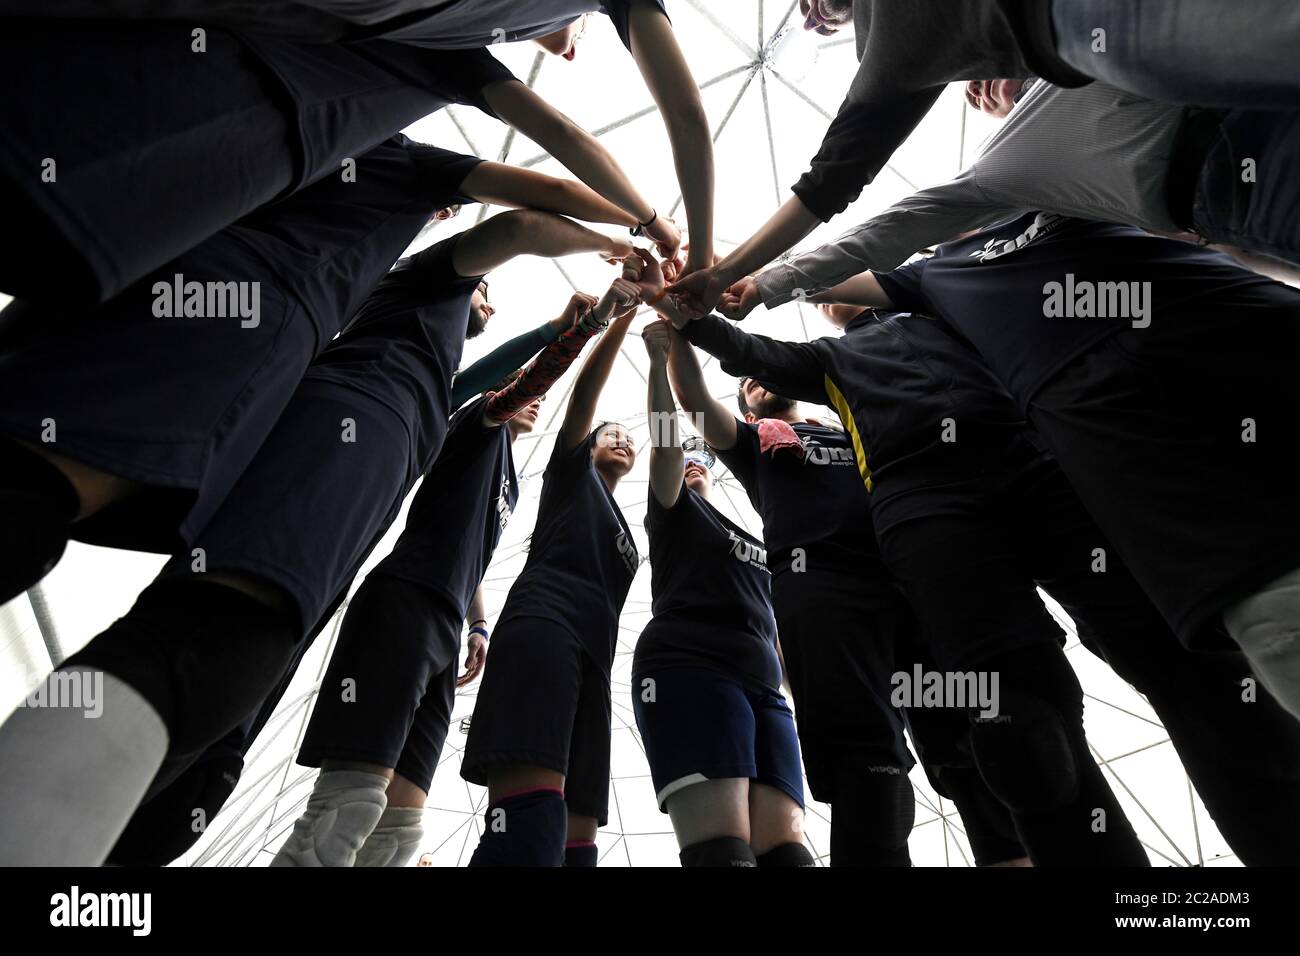 Weibliche und männliche Teamkollegen, die sich gegenseitig unterstützen, indem sie die Hände im Kreis halten, während eines Tchouklball-Spiels in Mailand. Stockfoto